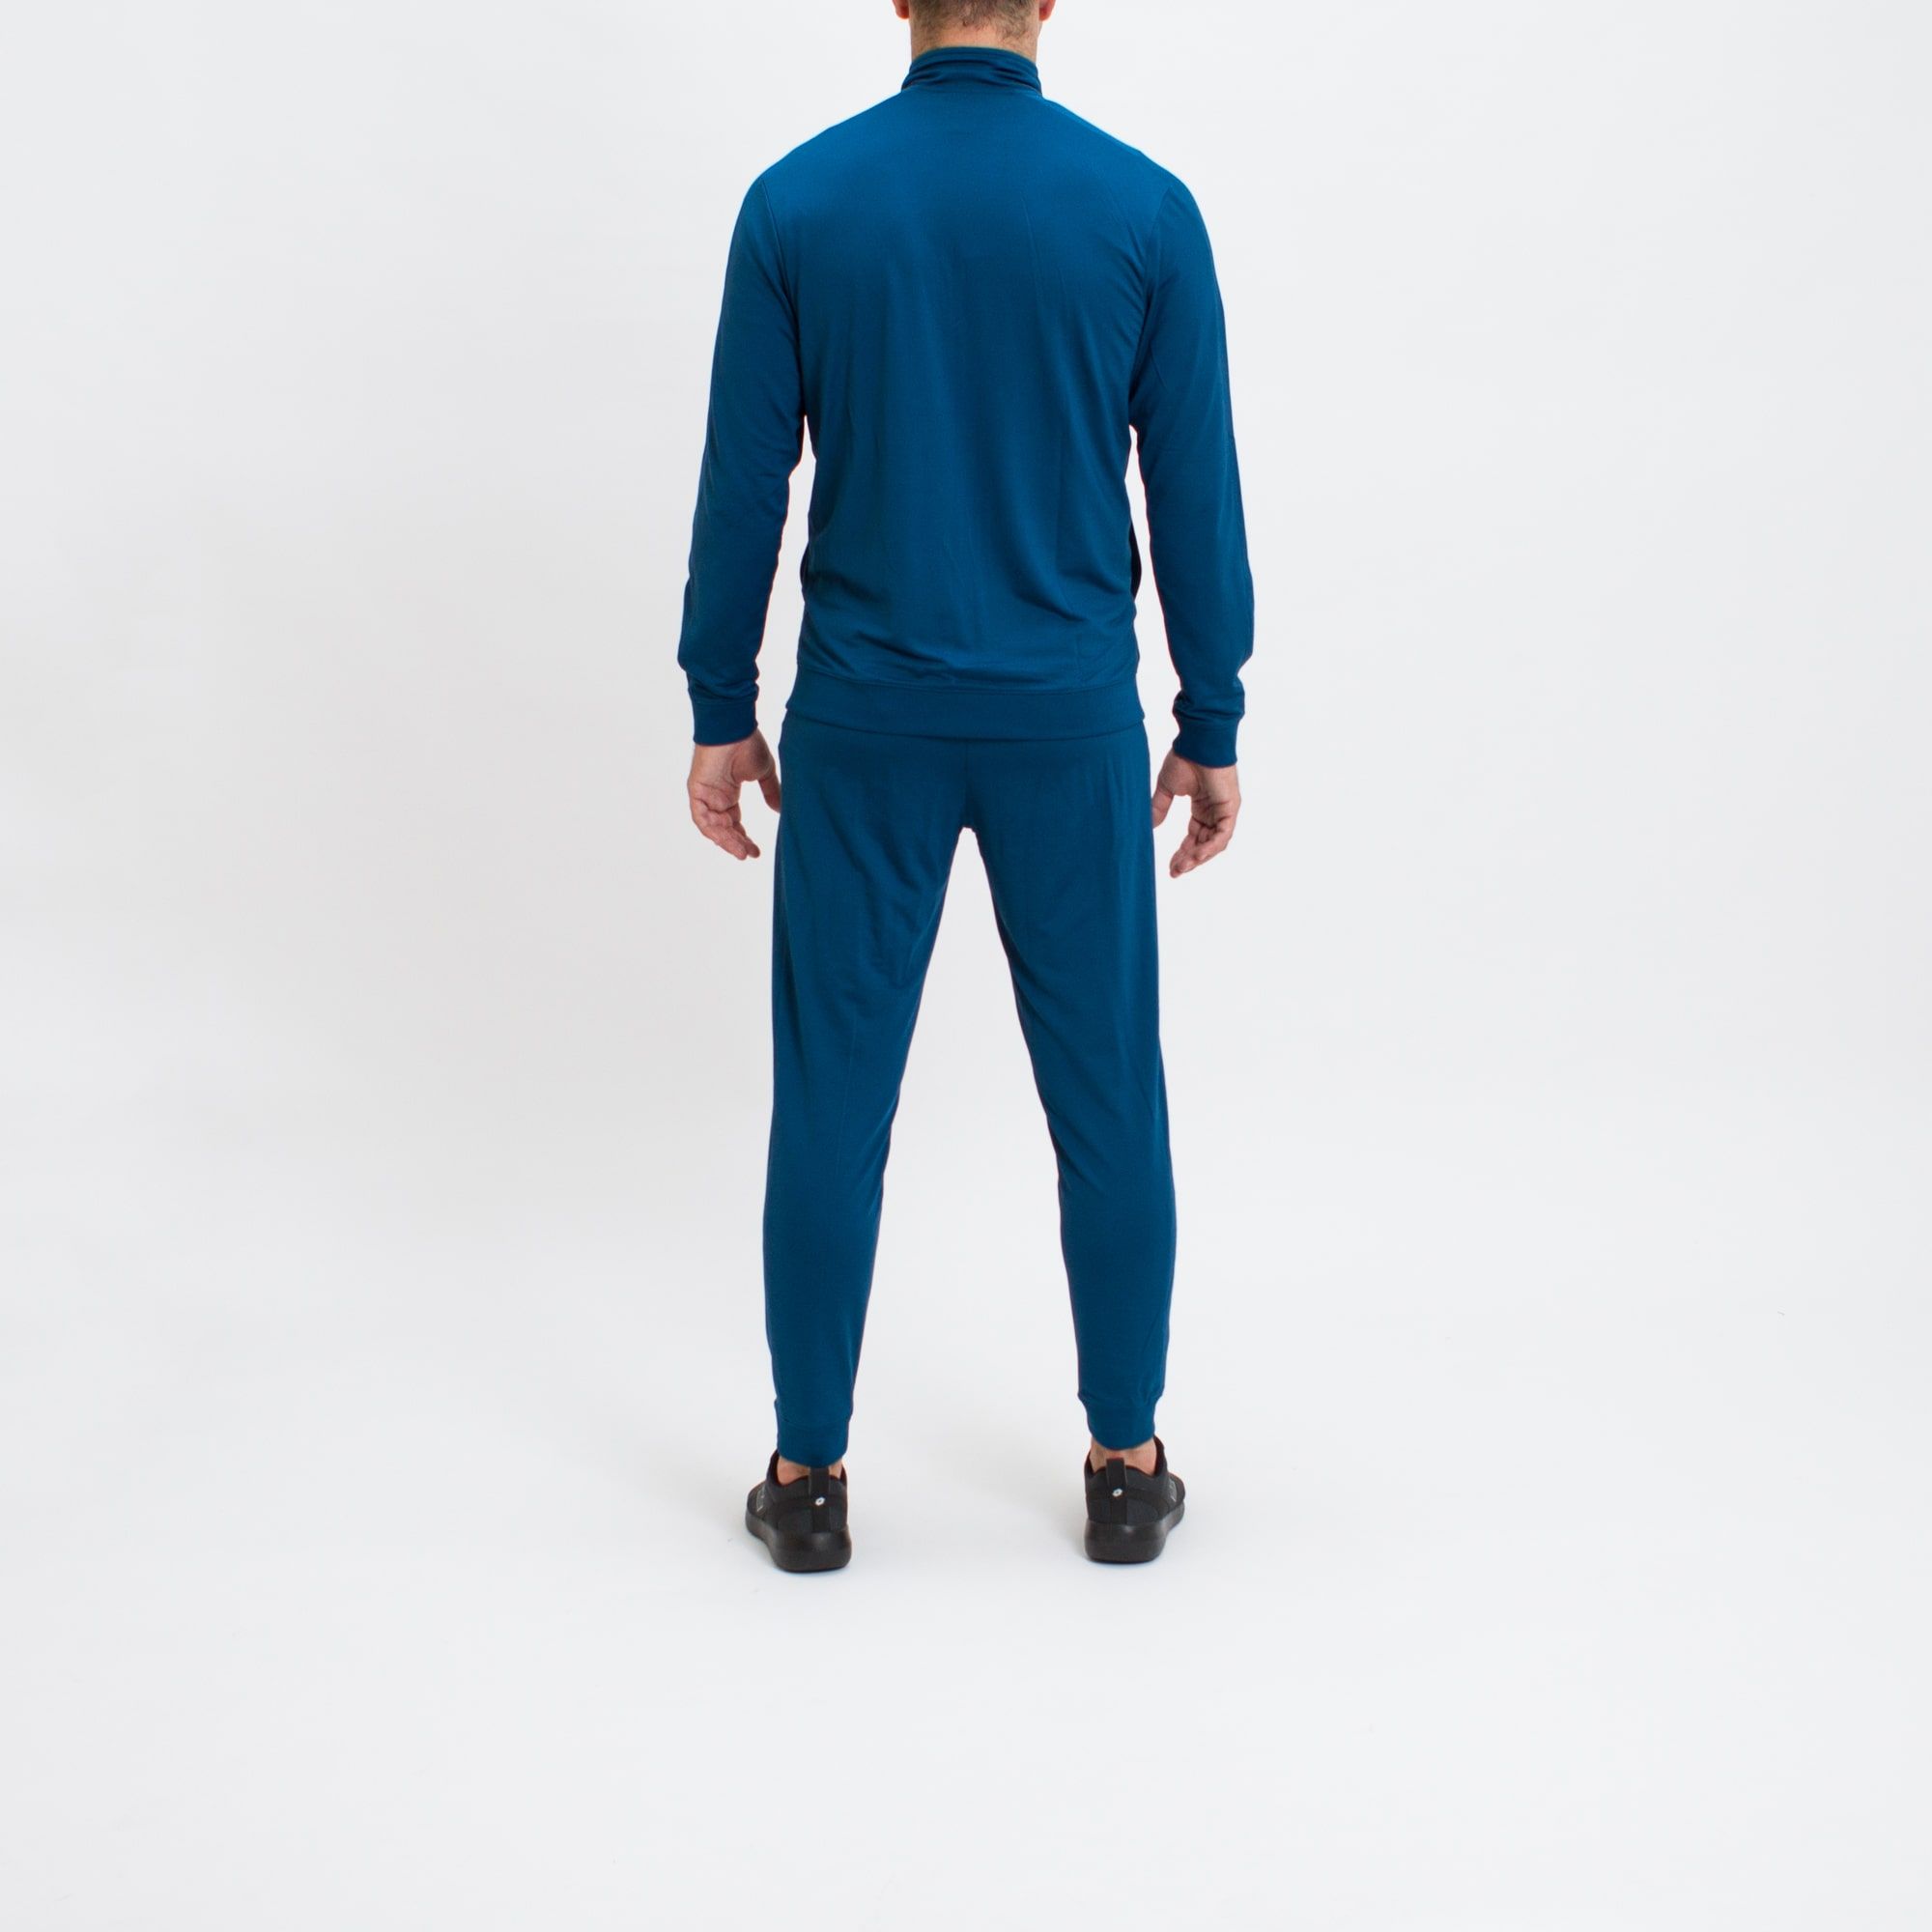 Bộ Thể Thao Chính Hãng - Nike Men's CE Tracksuit Full Zip 'Obsidian Blue' - 928109-474